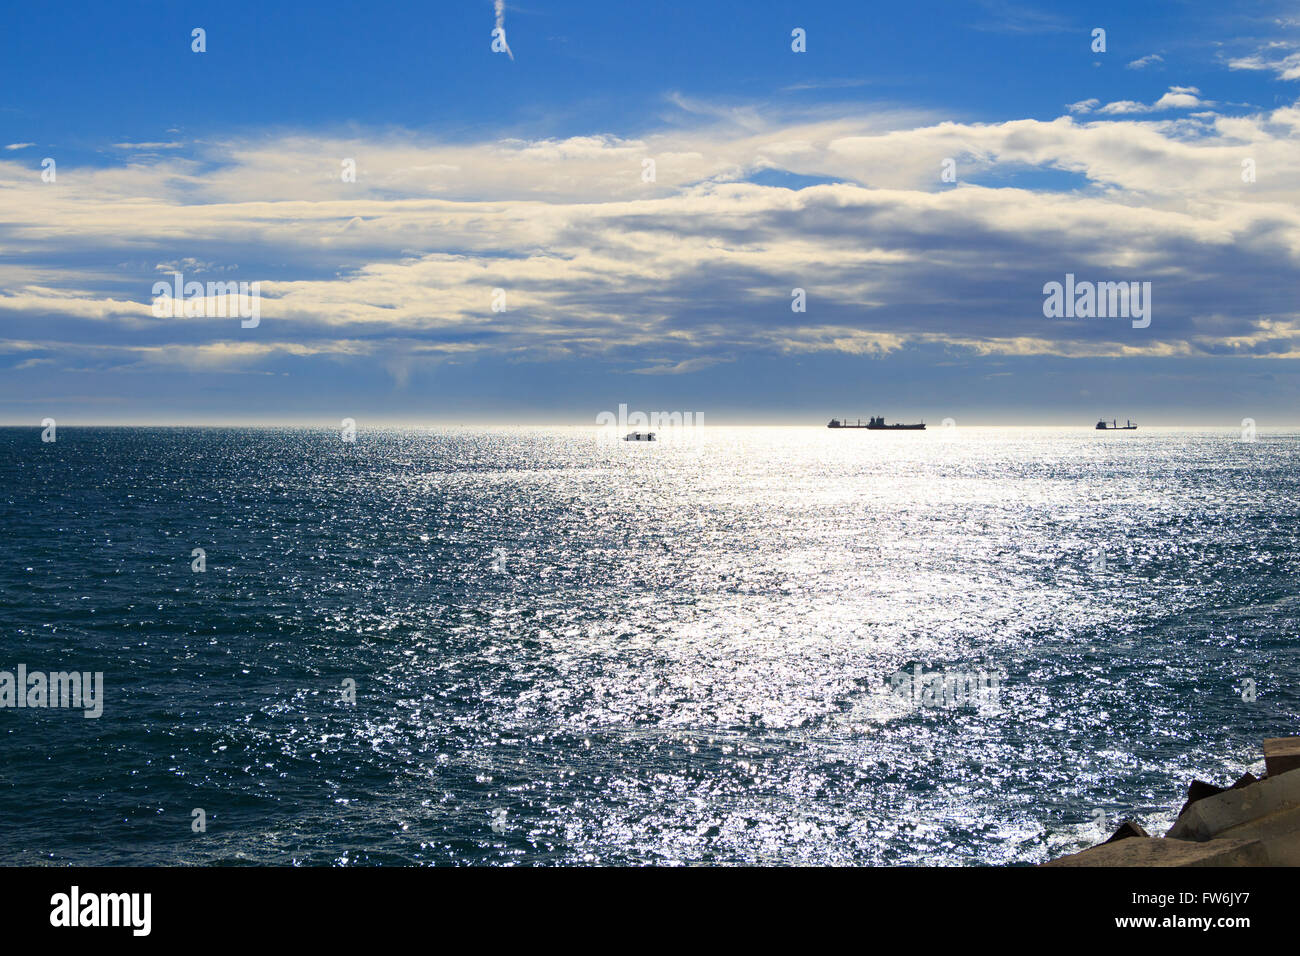 Bulk-carrier ship on the sea Stock Photo